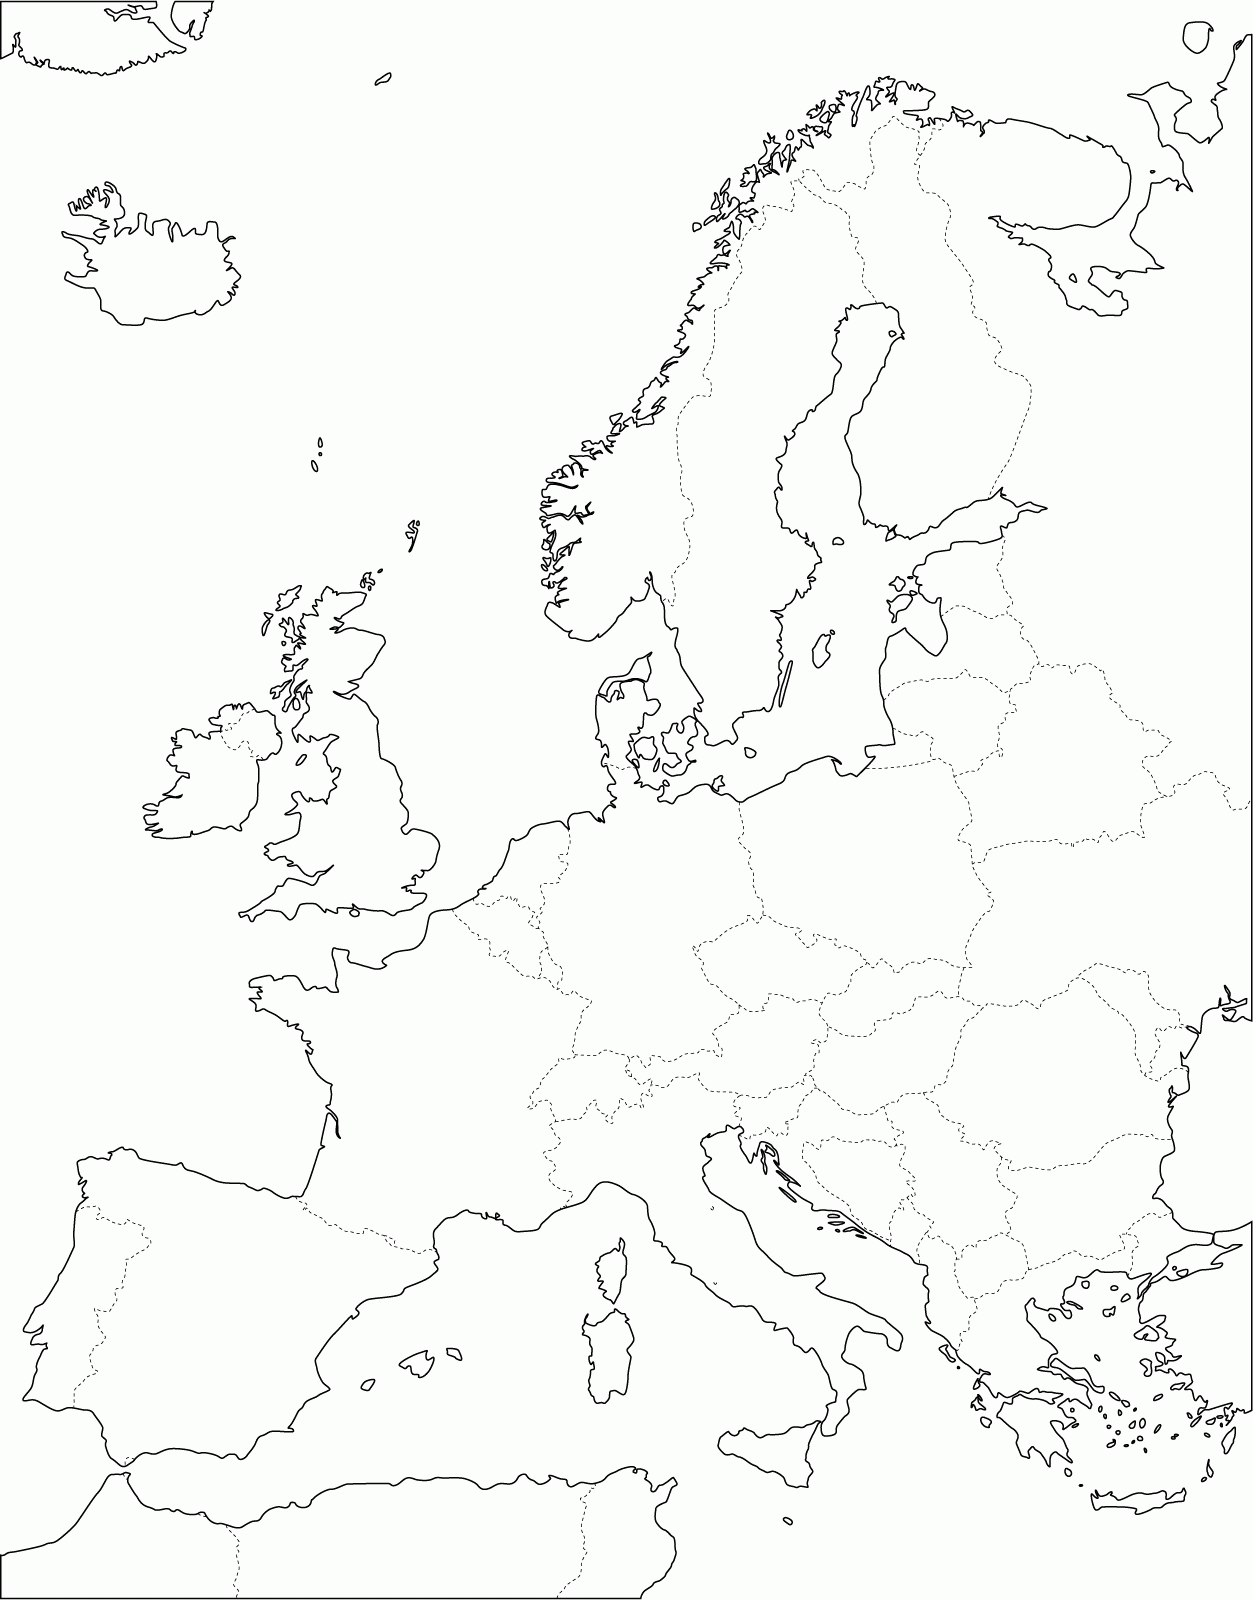 Grande Carte D'europe Vierge Et Blanche À Compléter | Carte intérieur Carte Europe Vierge Cm1